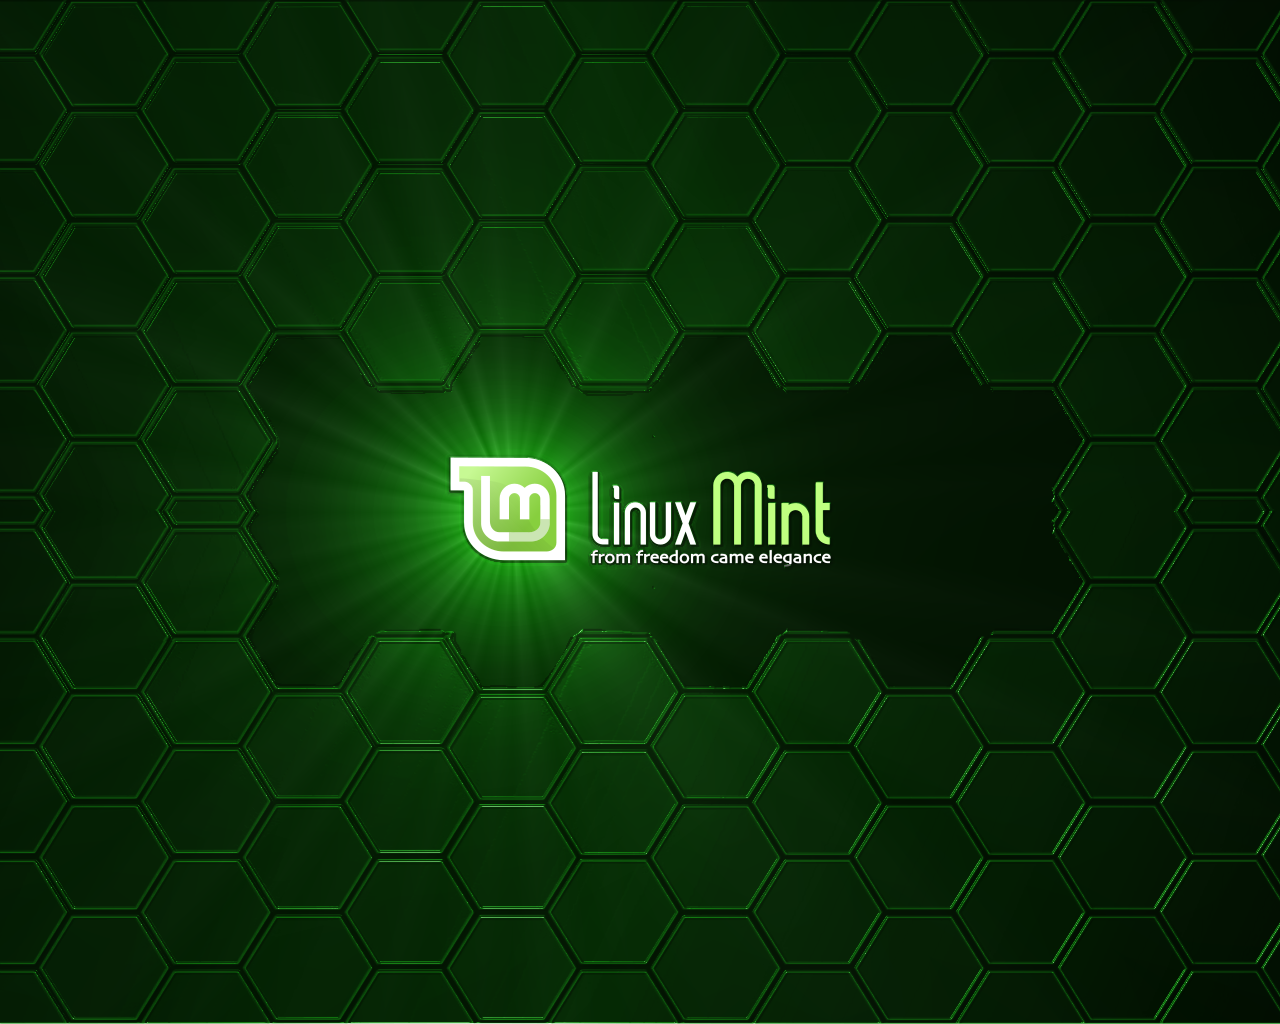 Cambios Que Vendr N En Linux Mint Helena Ubuntu Y Mas